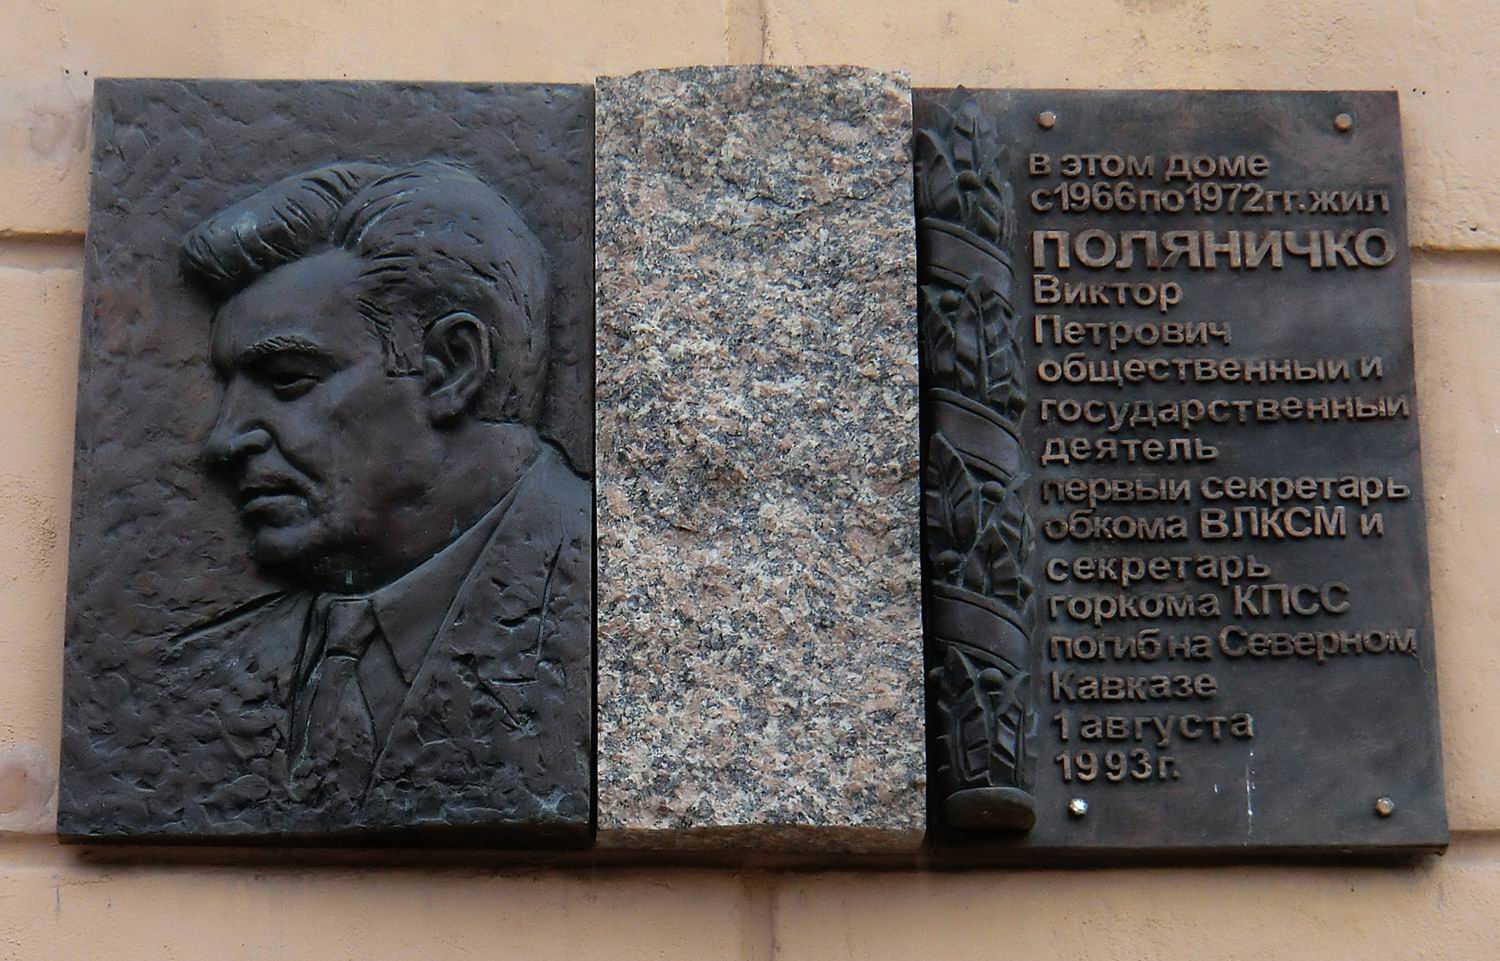 Мемориальная доска Поляничко В.П. (1937–1993), в Челябинске, на улице Коммуны, дом 71.